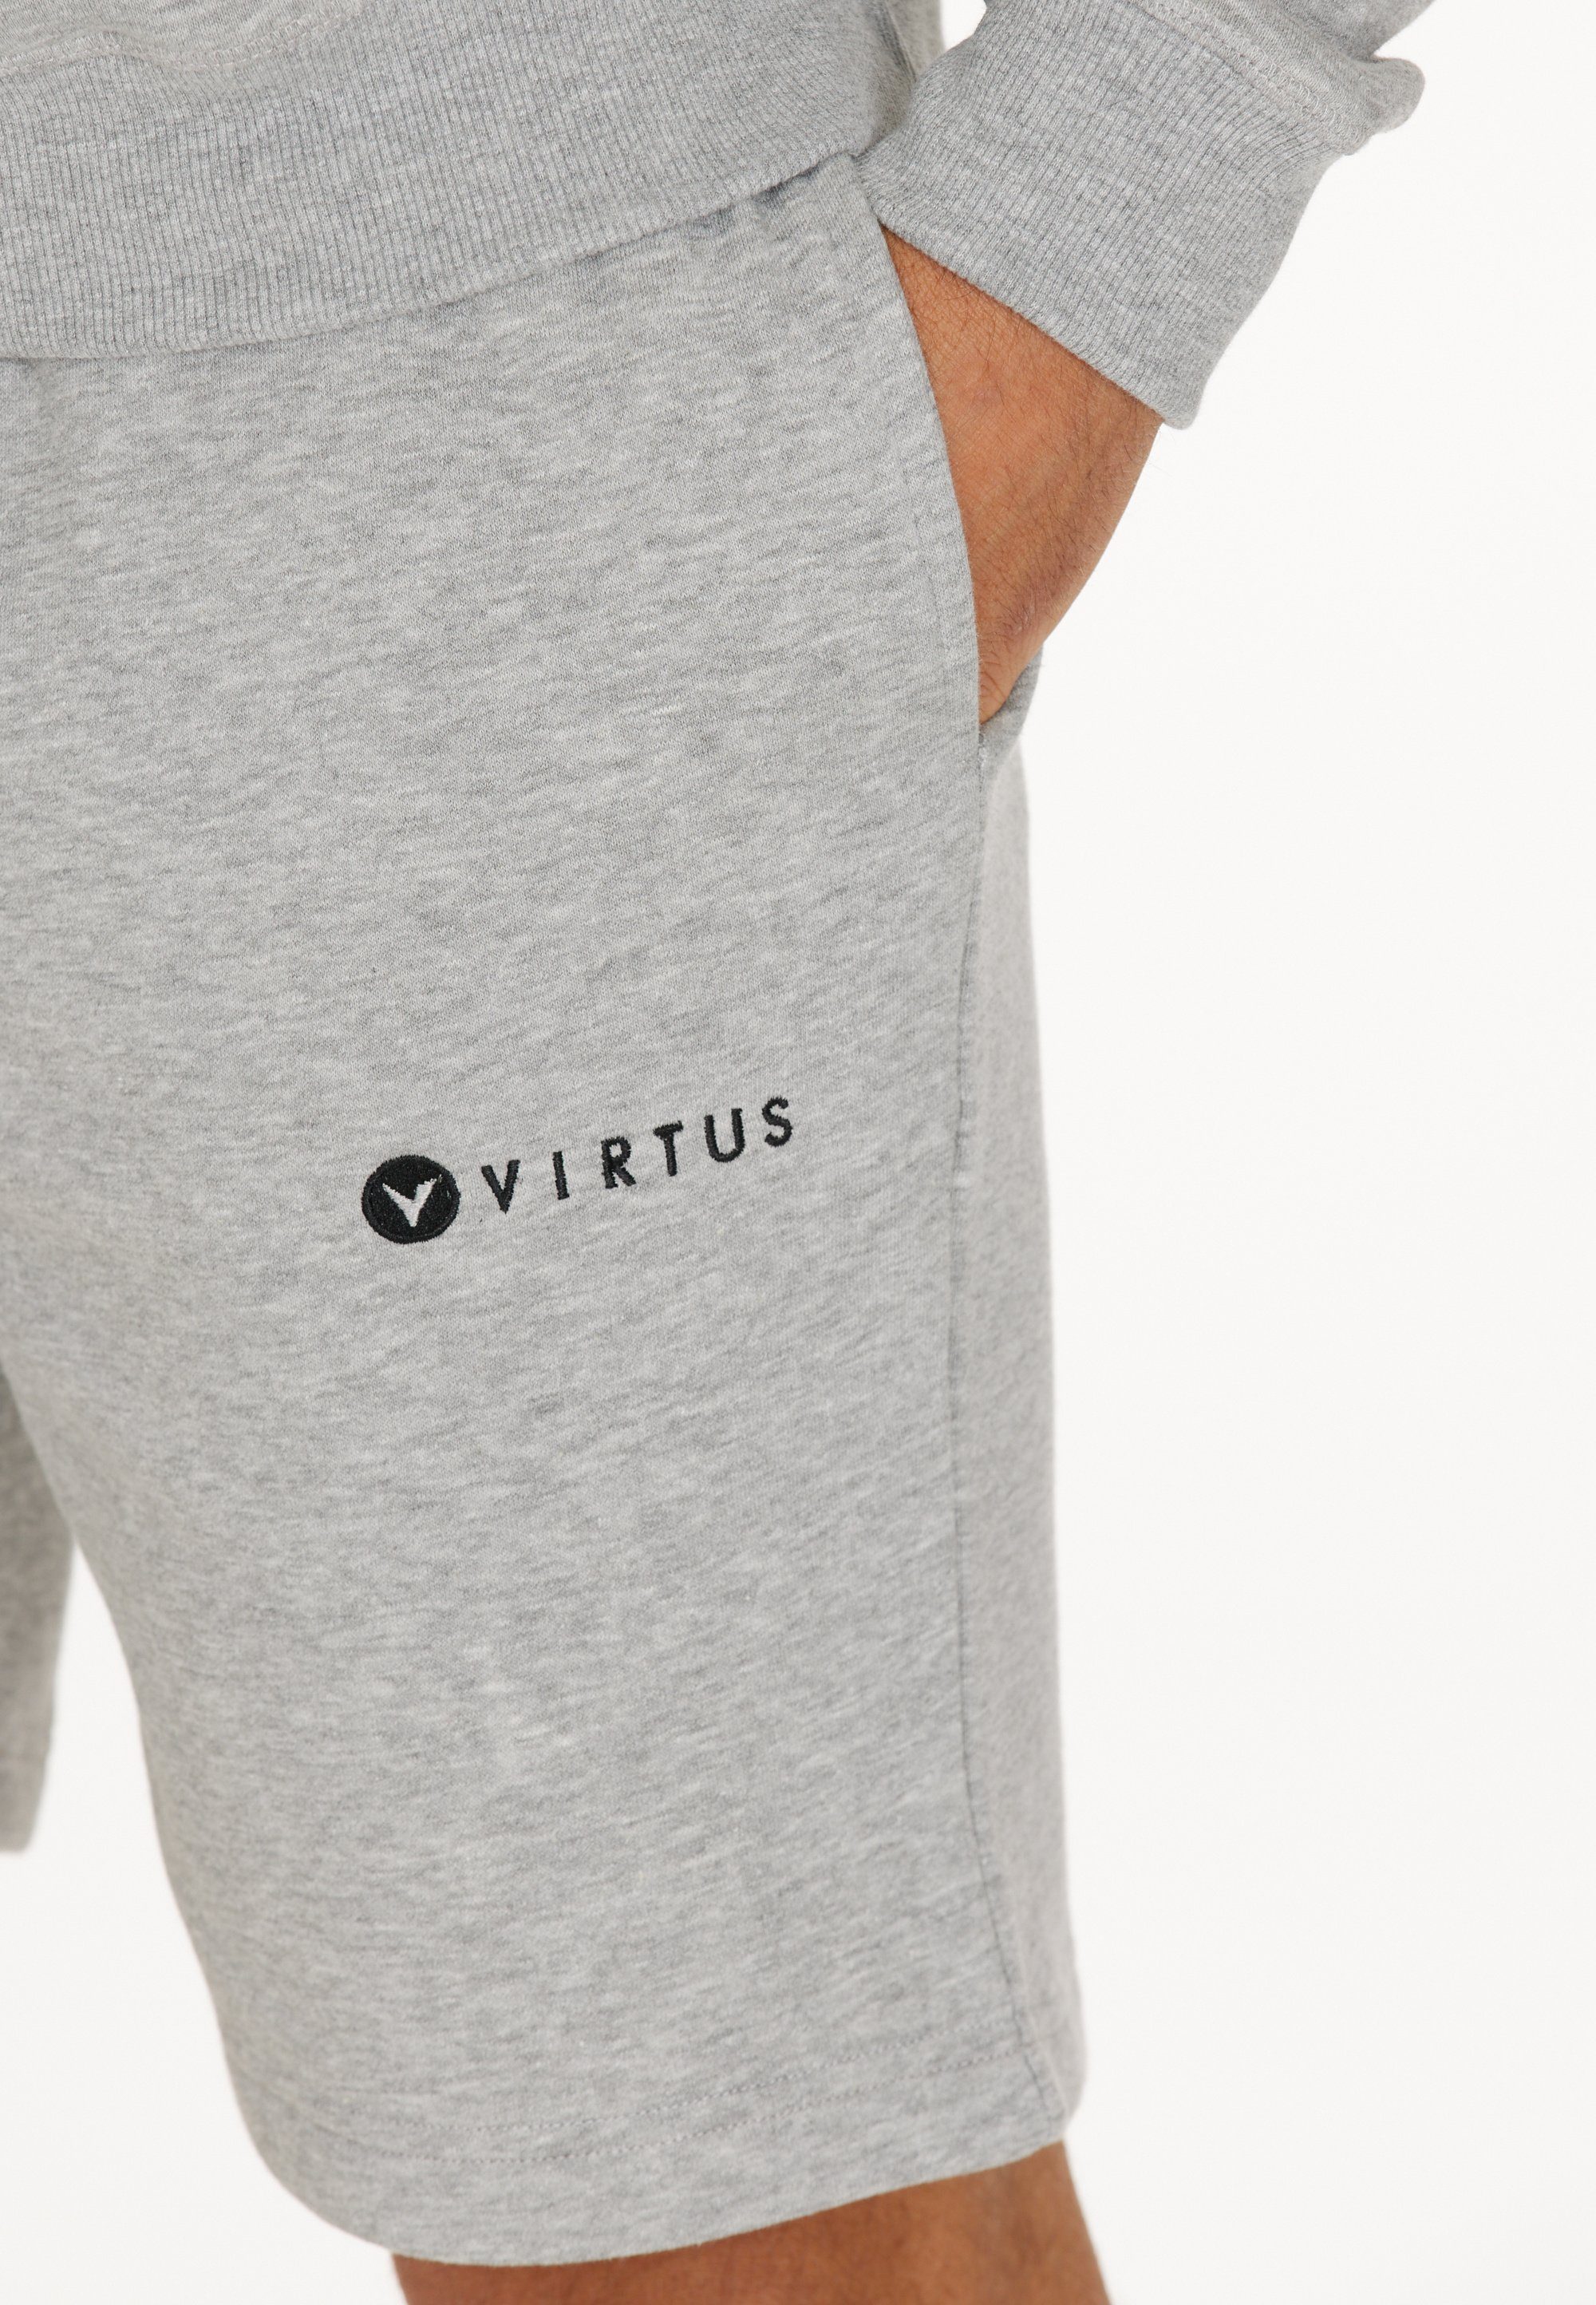 grau-meliert Virtus Kritow in Shorts sportlichem Design